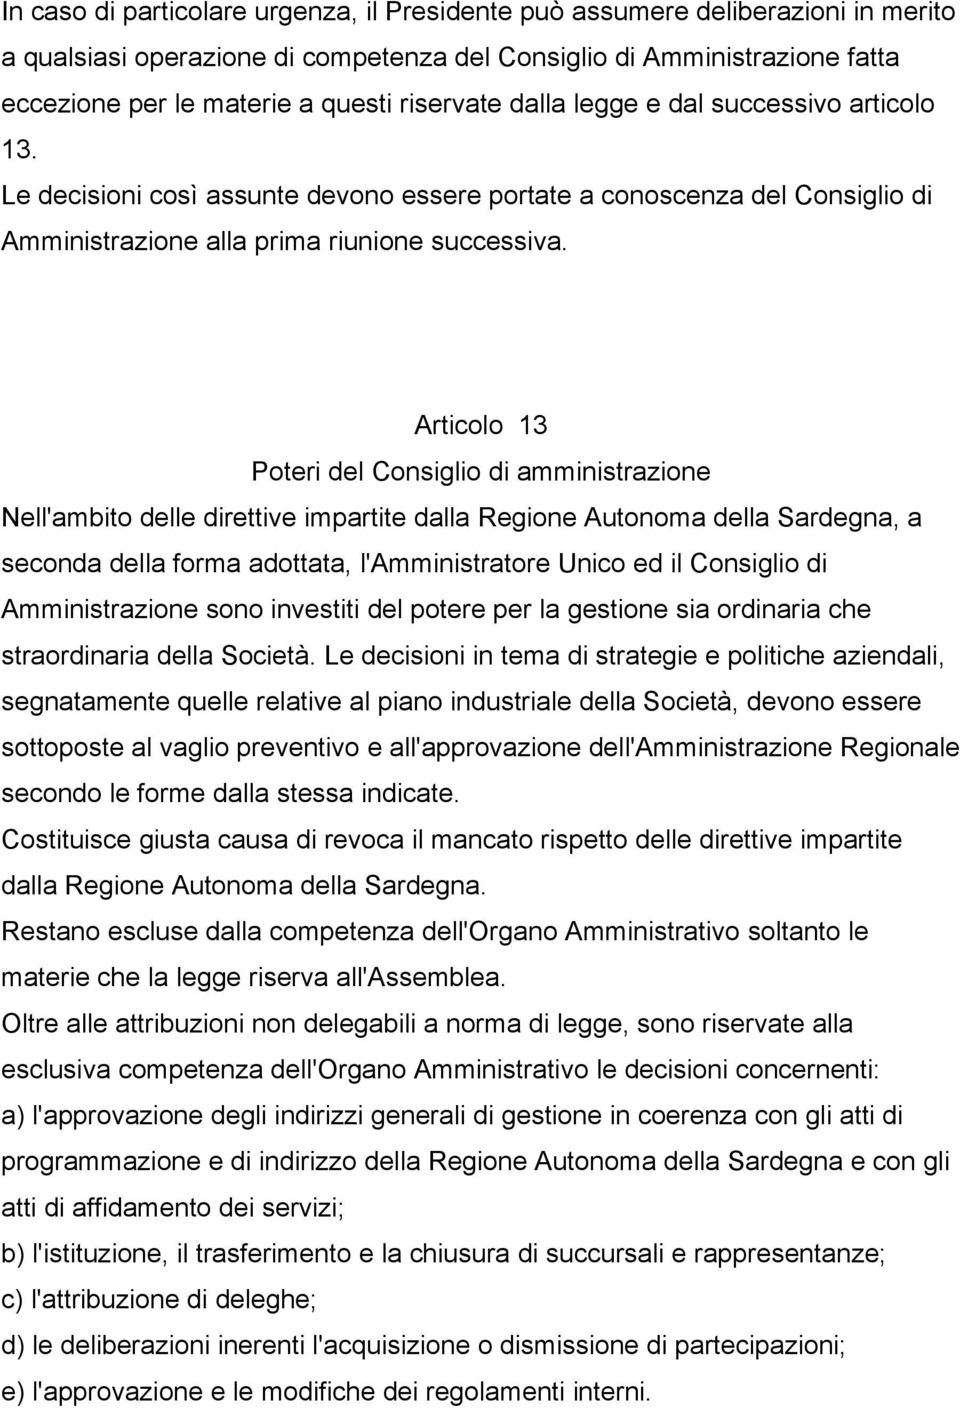 Articolo 13 Poteri del Consiglio di amministrazione Nell'ambito delle direttive impartite dalla Regione Autonoma della Sardegna, a seconda della forma adottata, l'amministratore Unico ed il Consiglio